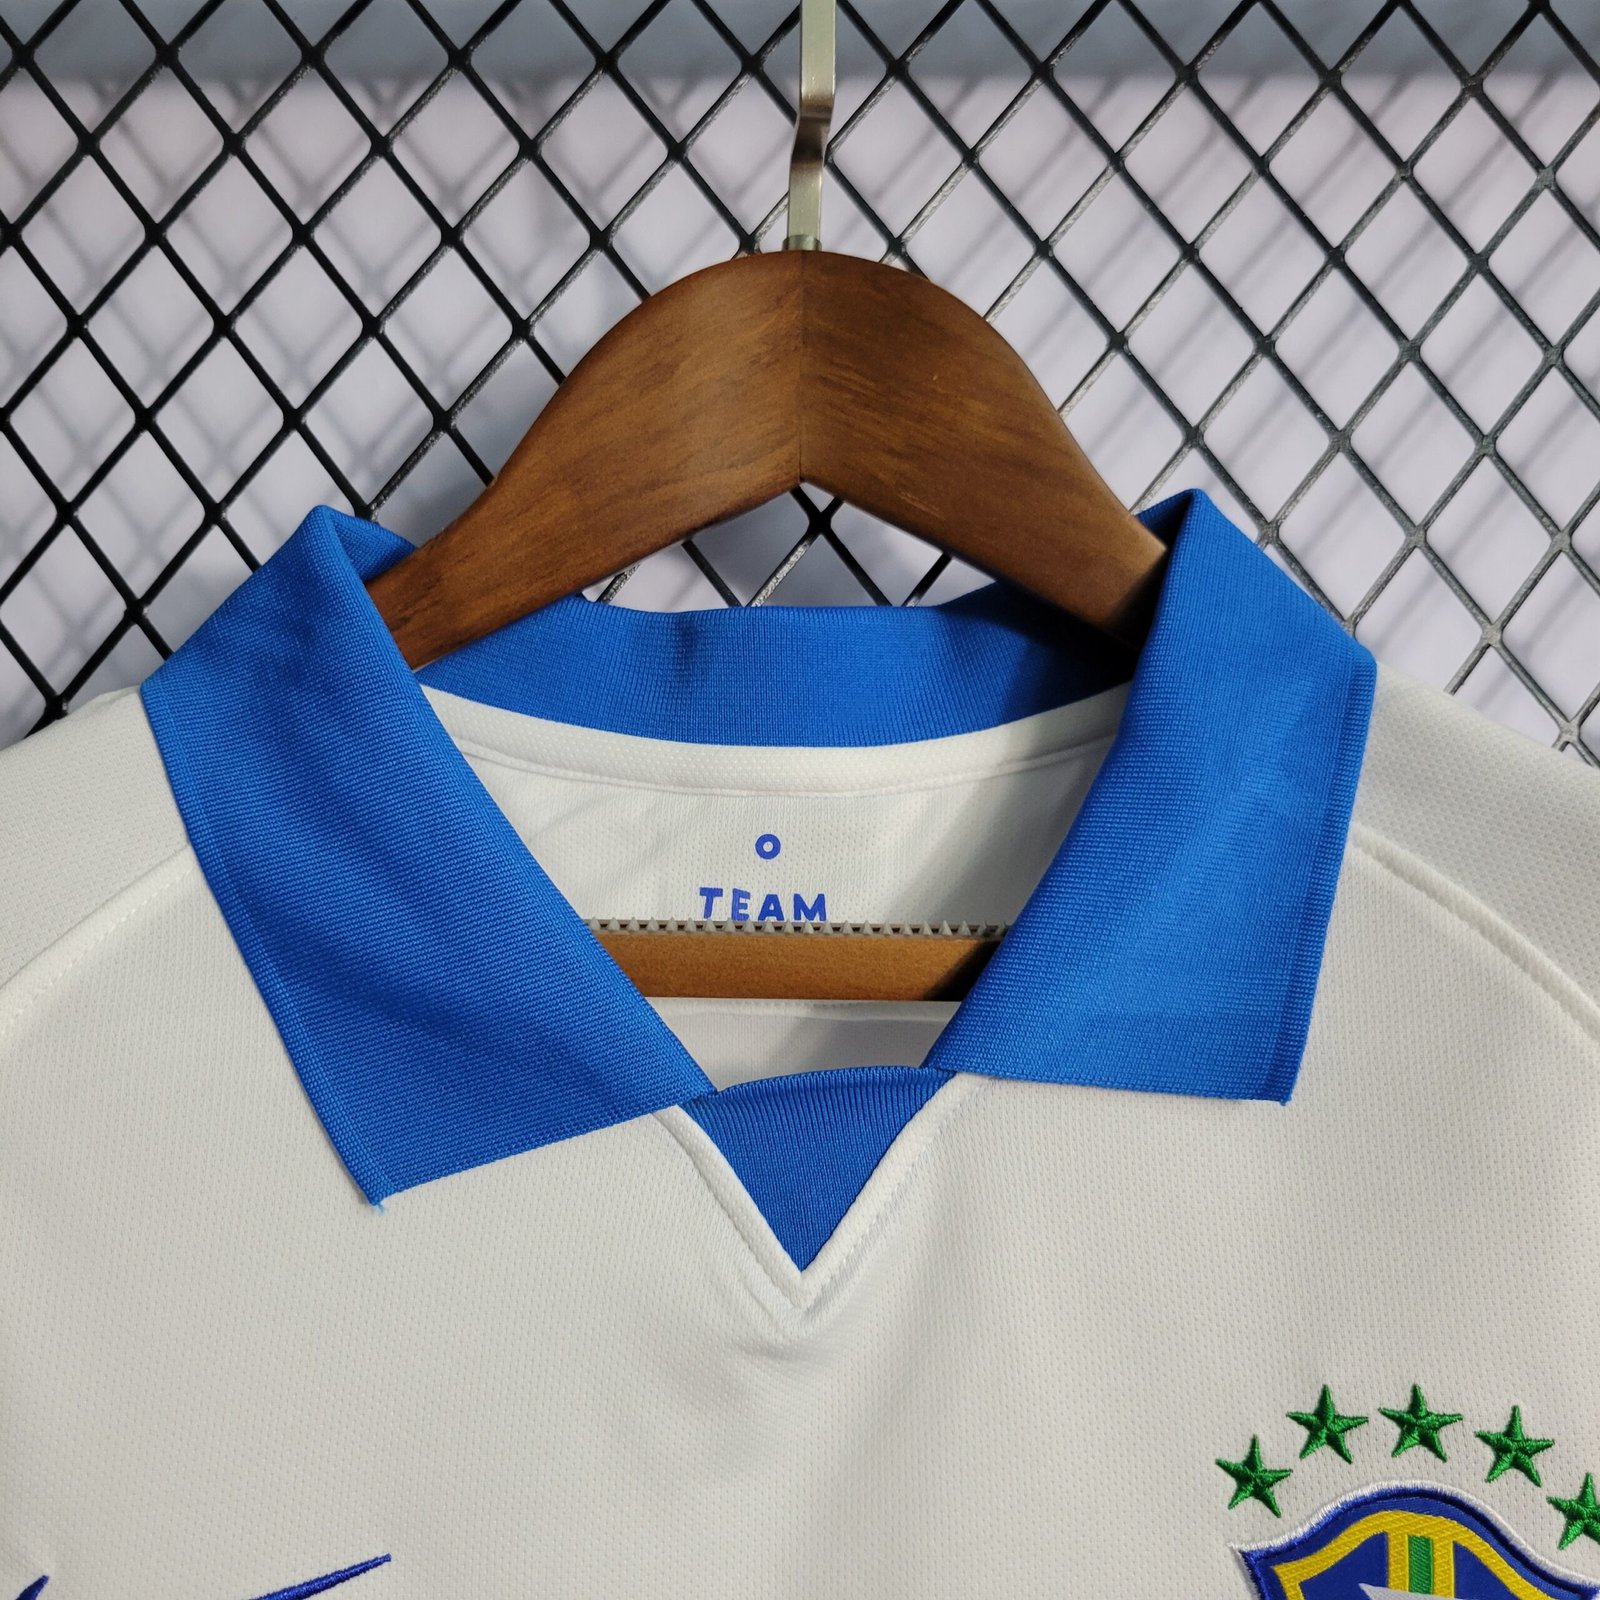 Camisa Do Brasil Branca 2019/2020